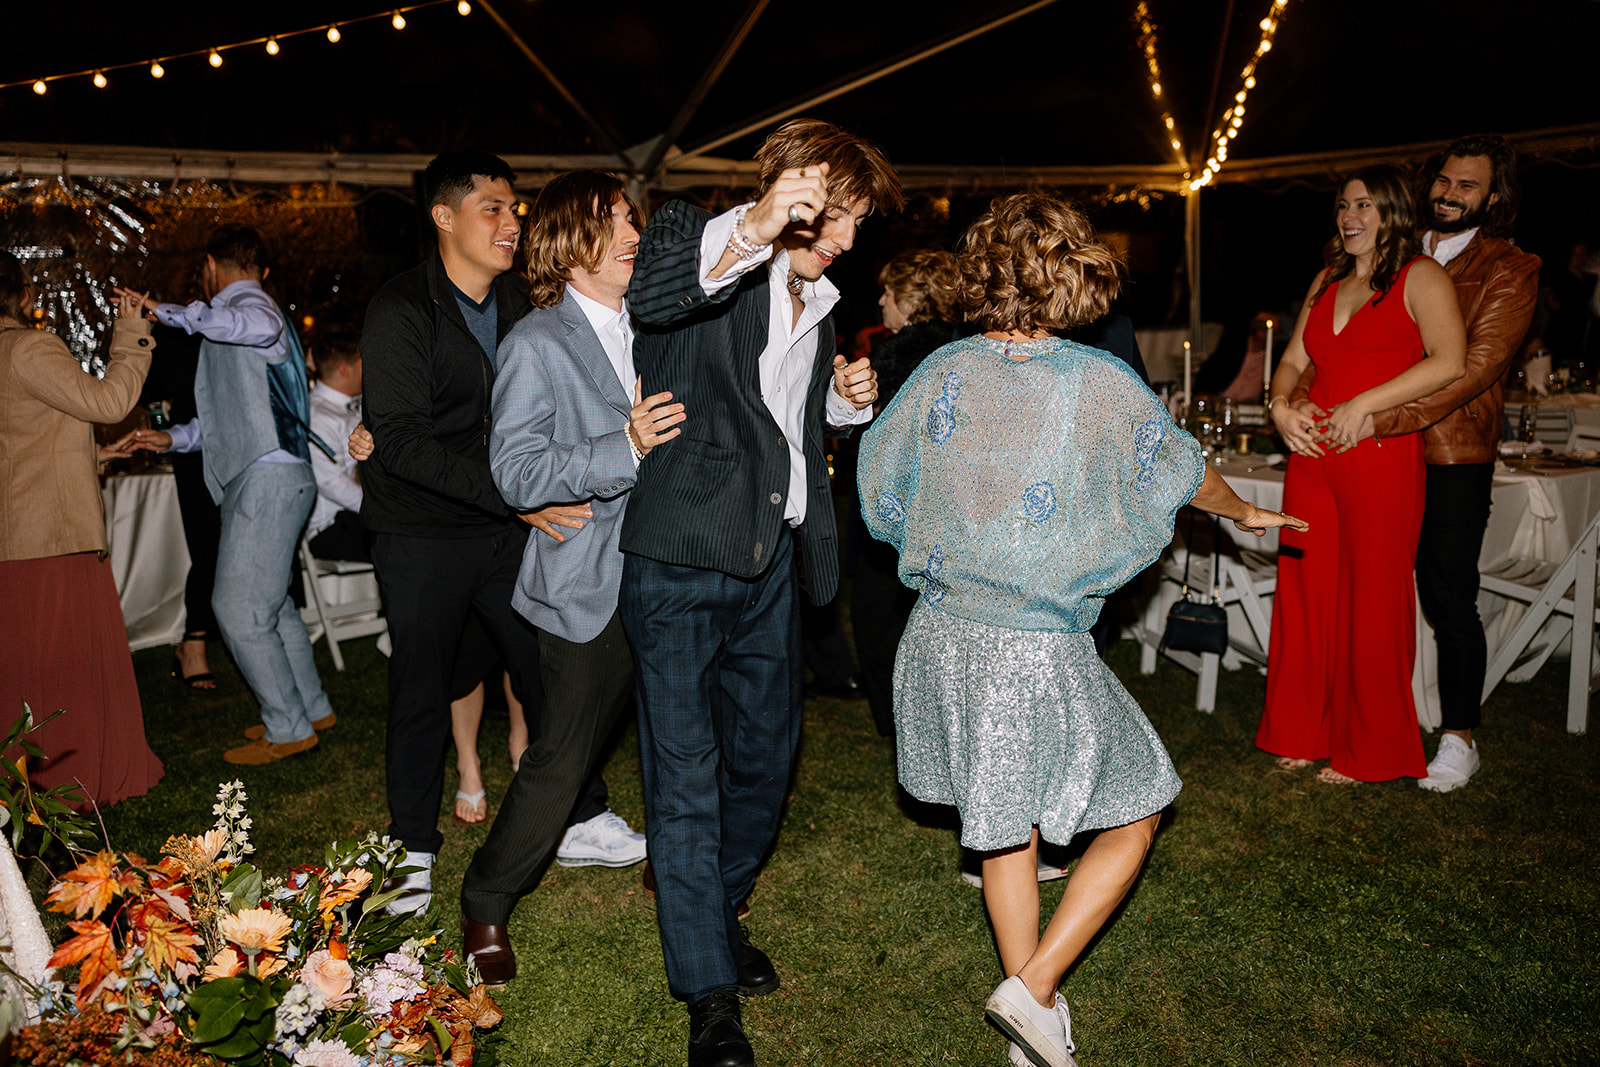 Guests dance during the dreamy Poco Diablo Resort wedding reception